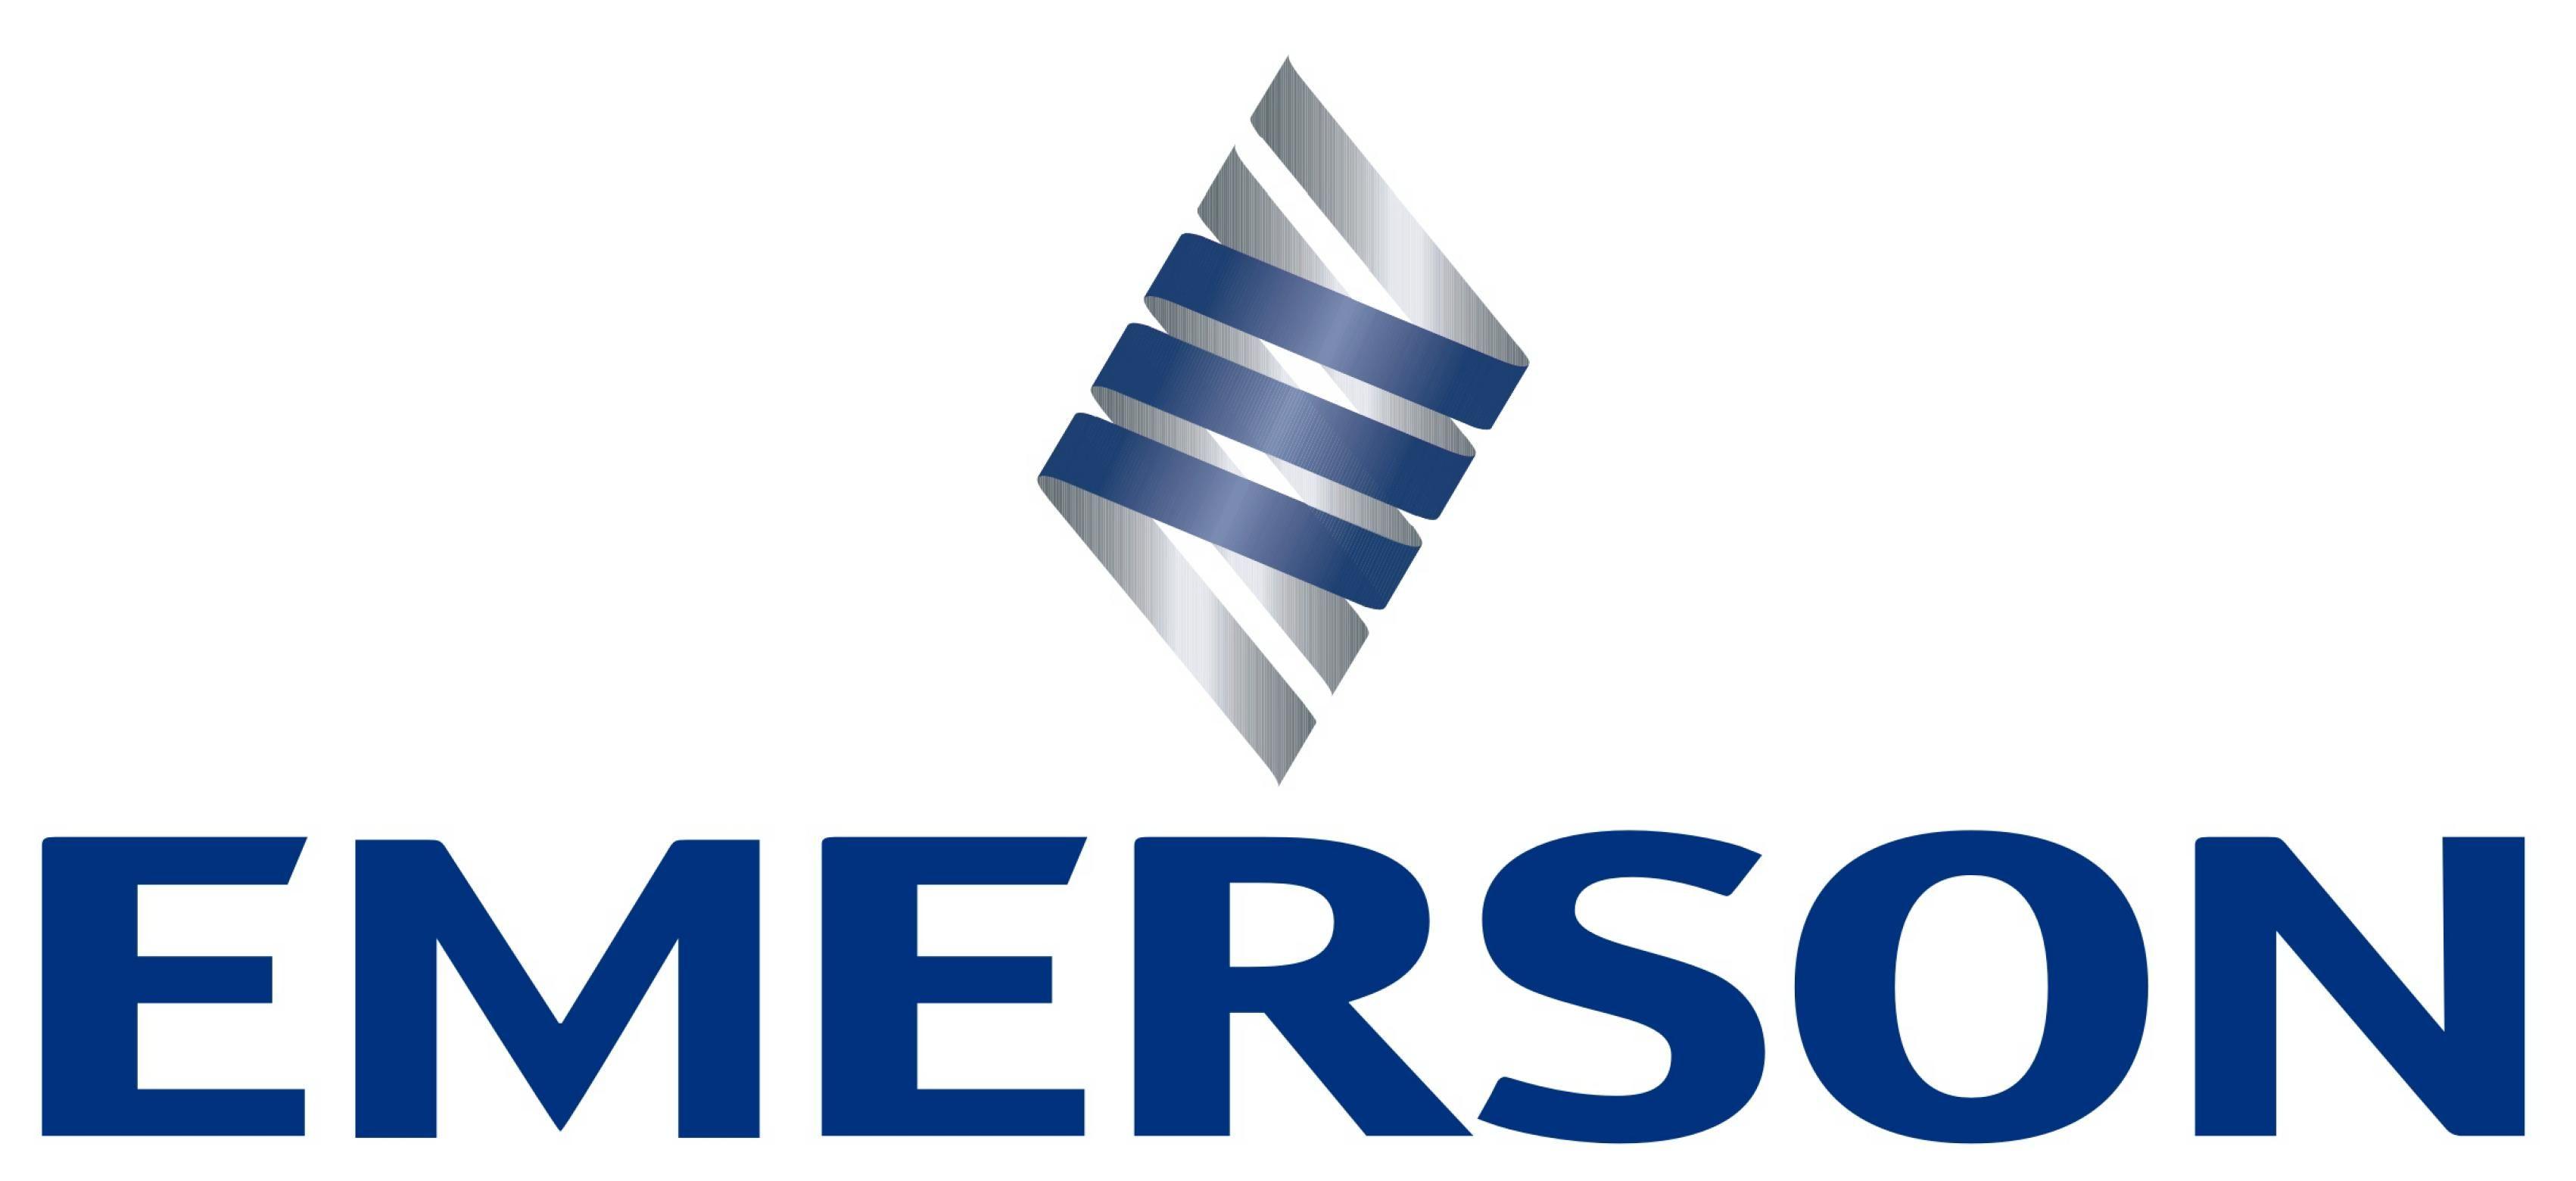 Emerson Electric Logo - Emerson Electric Logo | LOGOSURFER.COM